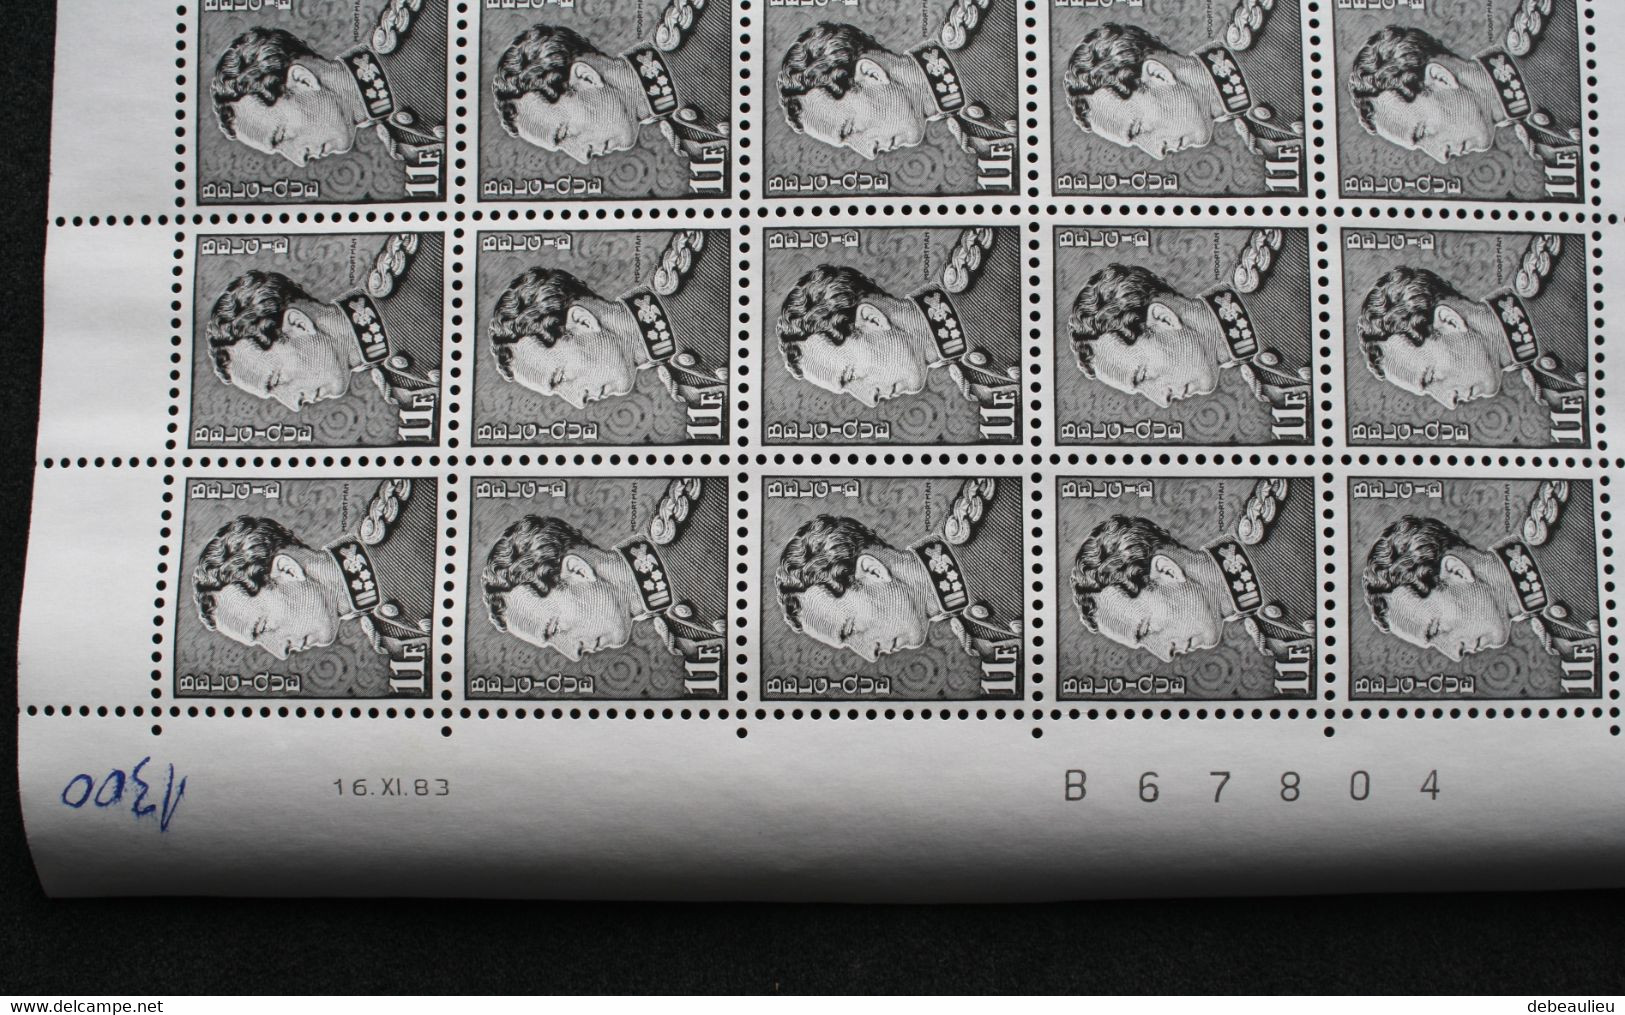 2 feuilles complètes - année 1983 - timbre 2111 - valeur 11f -décès de SM Le Roi Léopold III - planches n°1 et 2